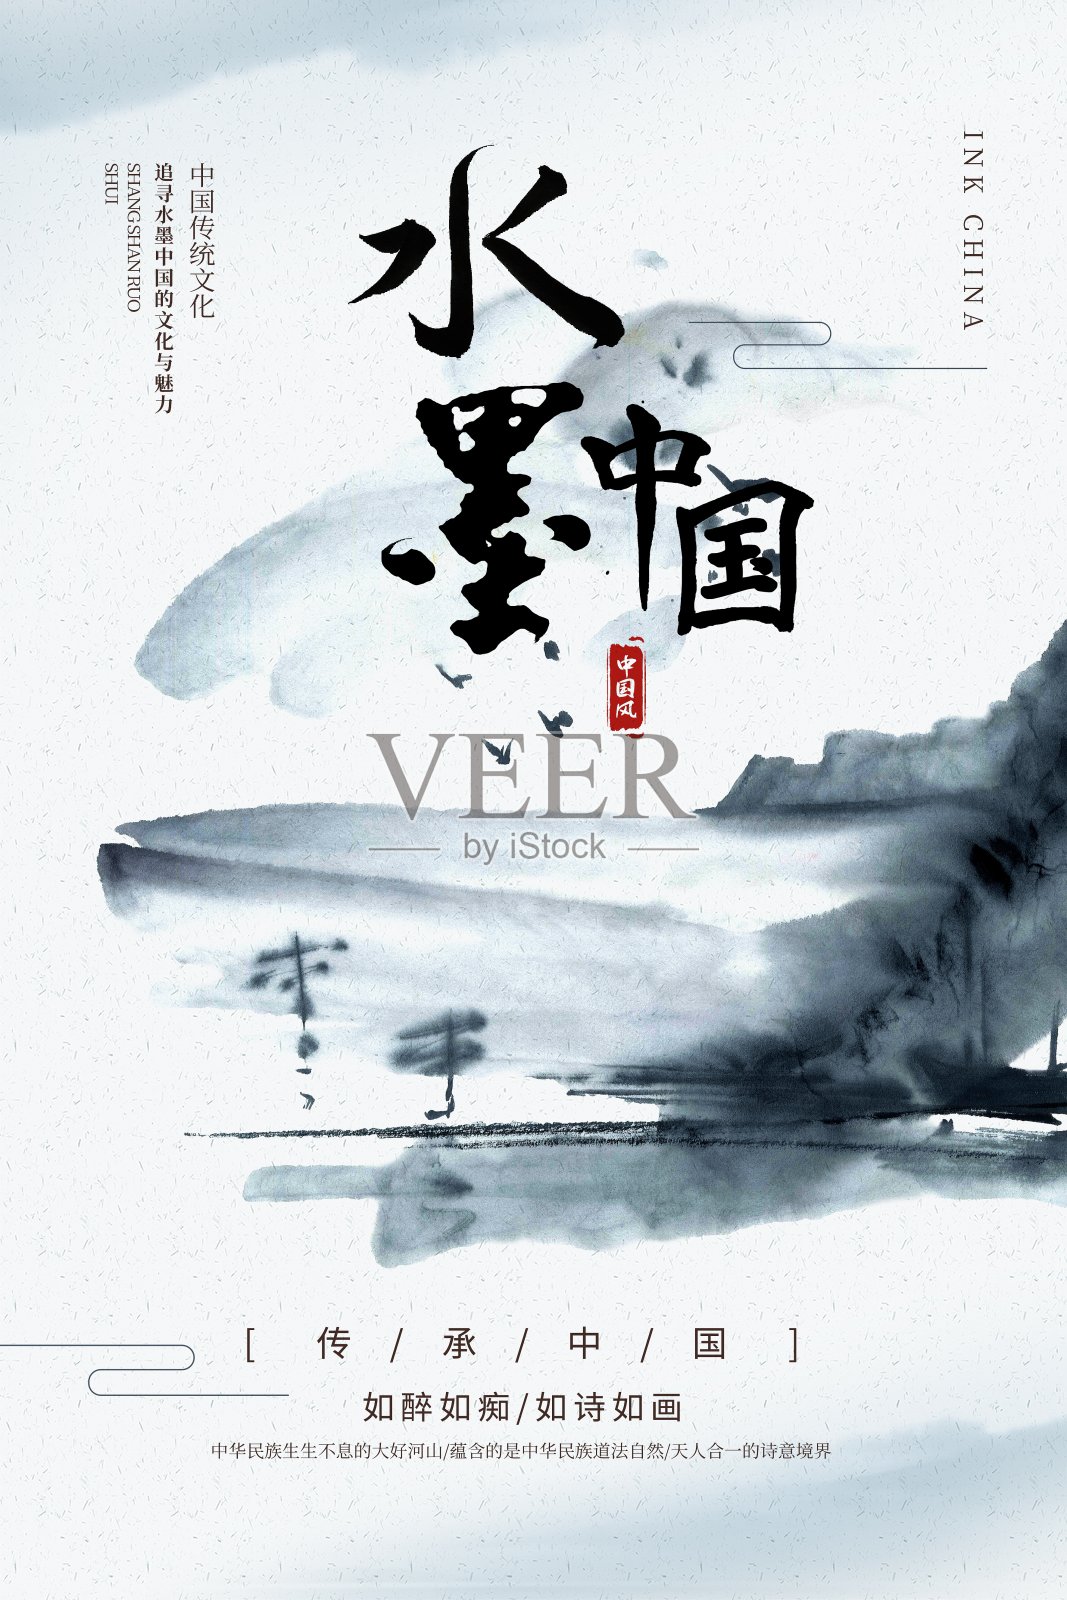 水墨中国文化宣传海报设计模板素材